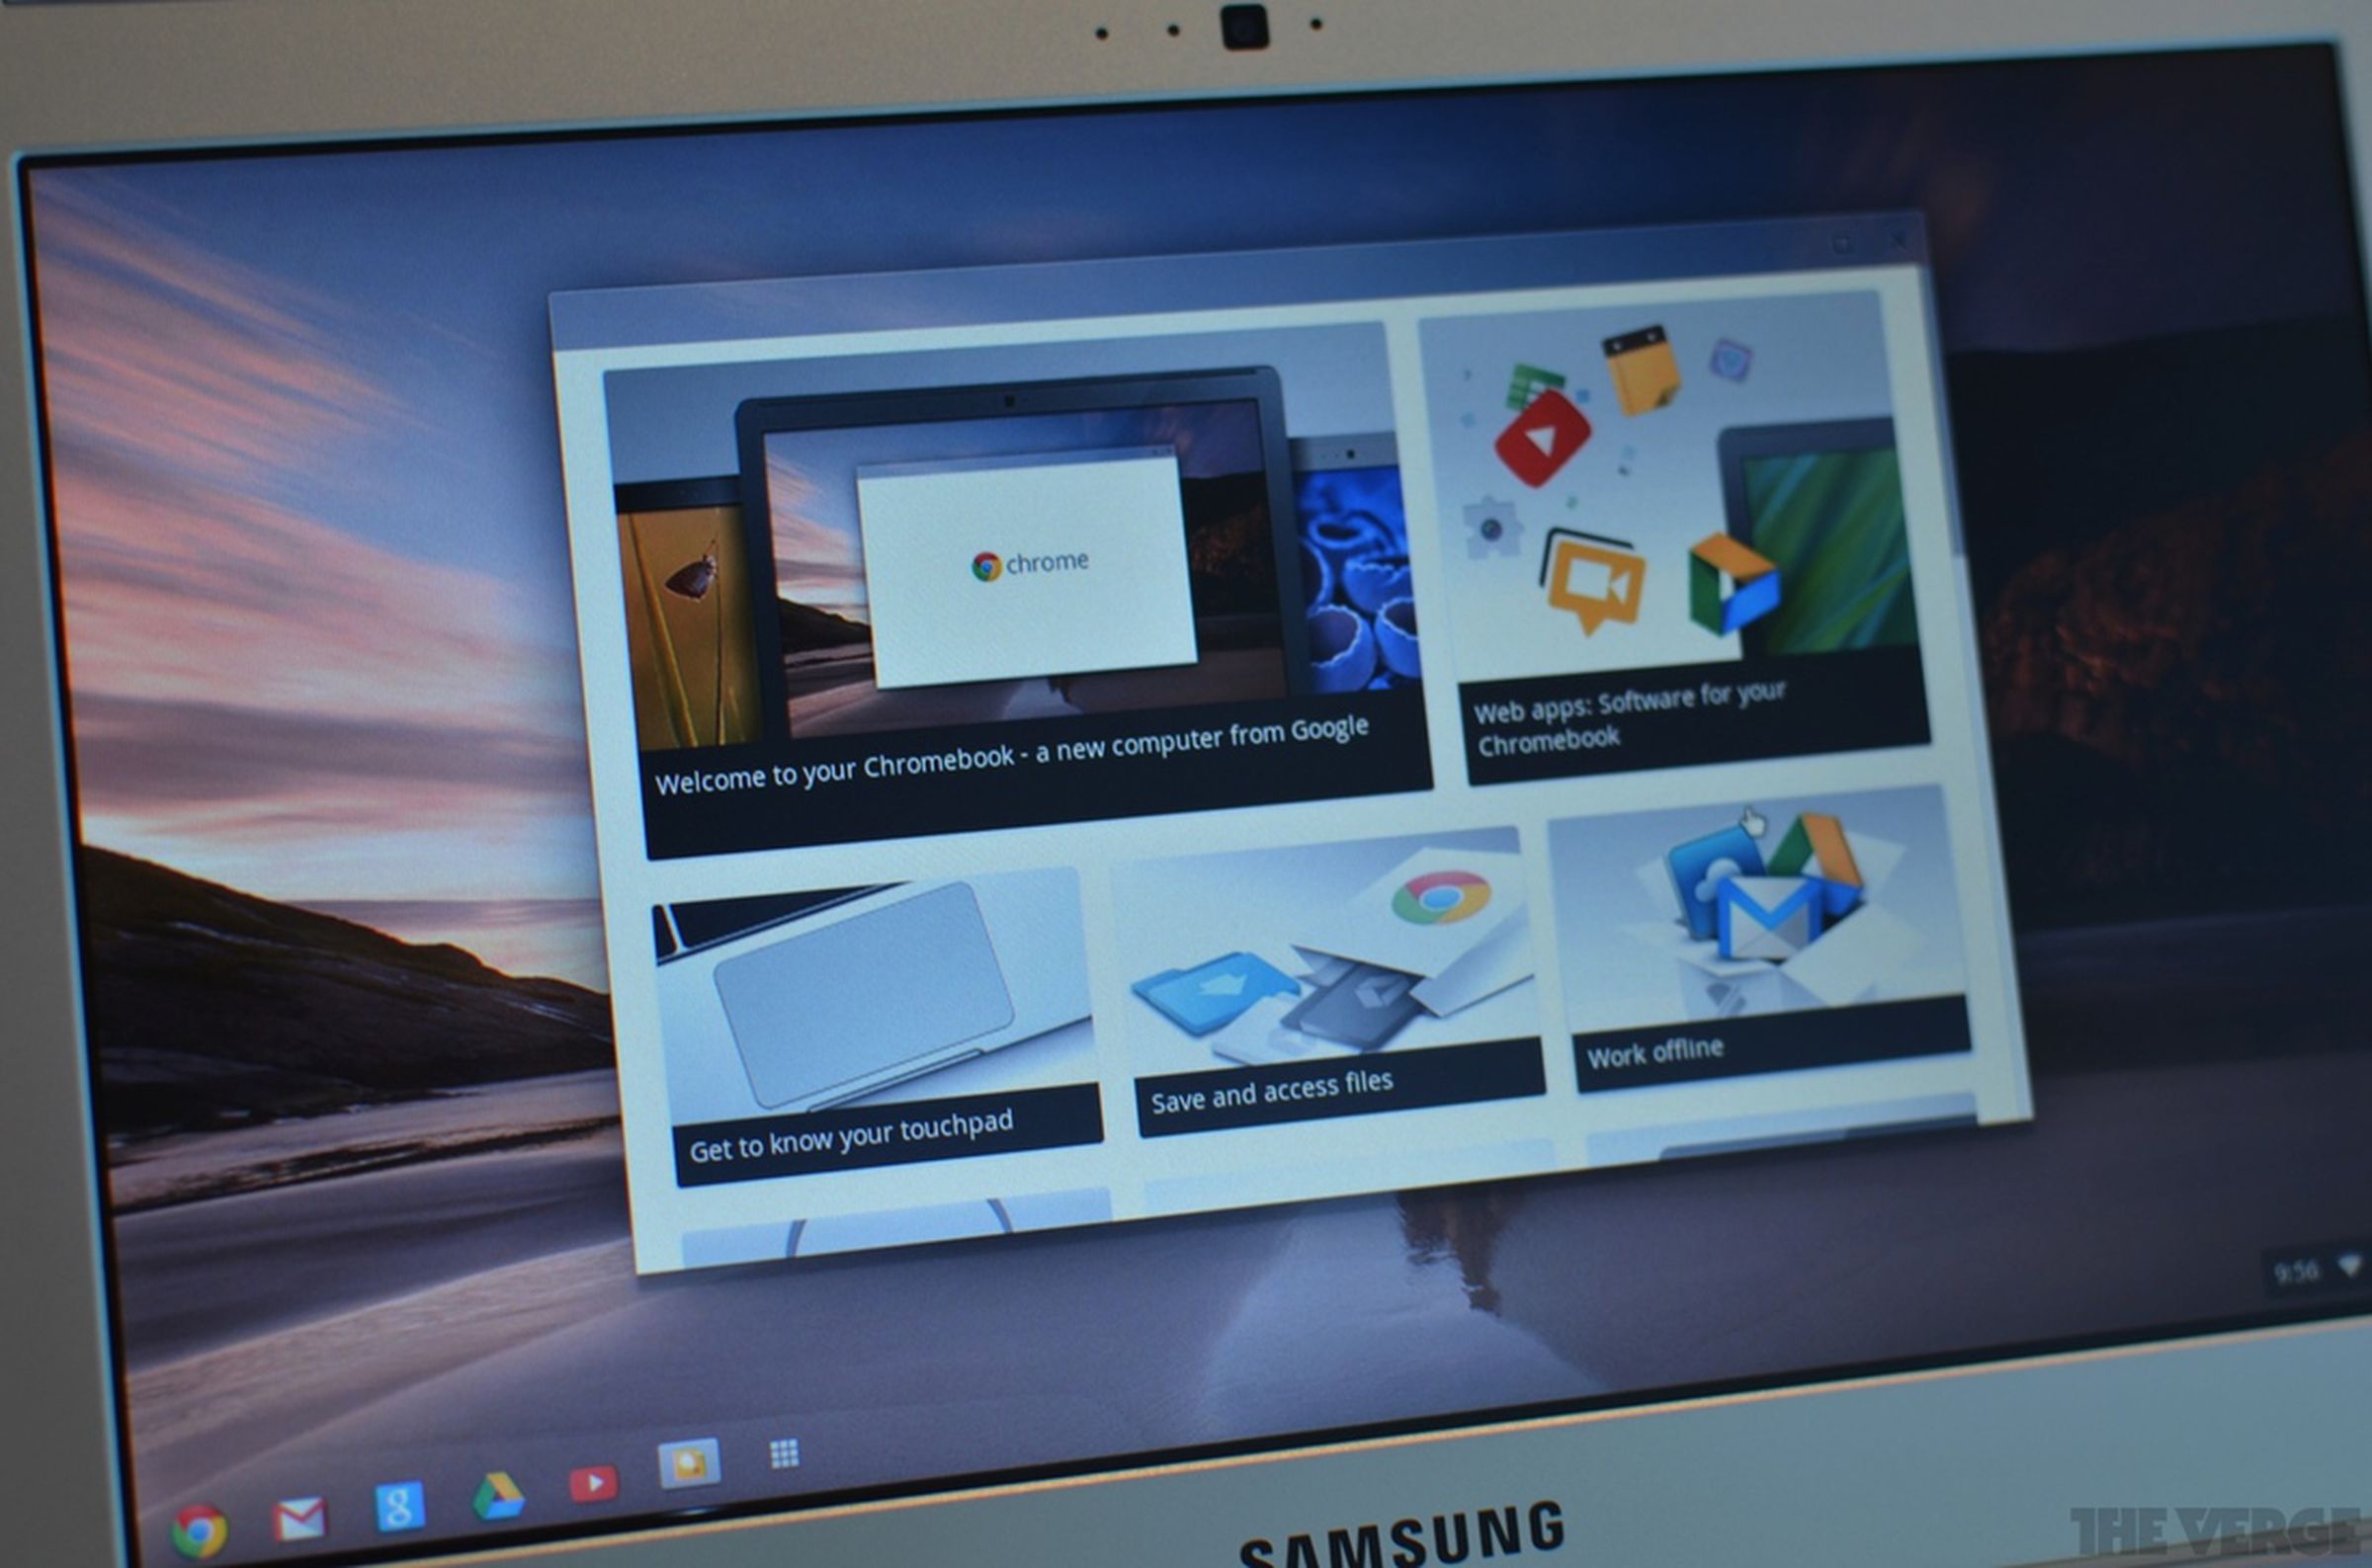 New Samsung Chromebook hands-on photos